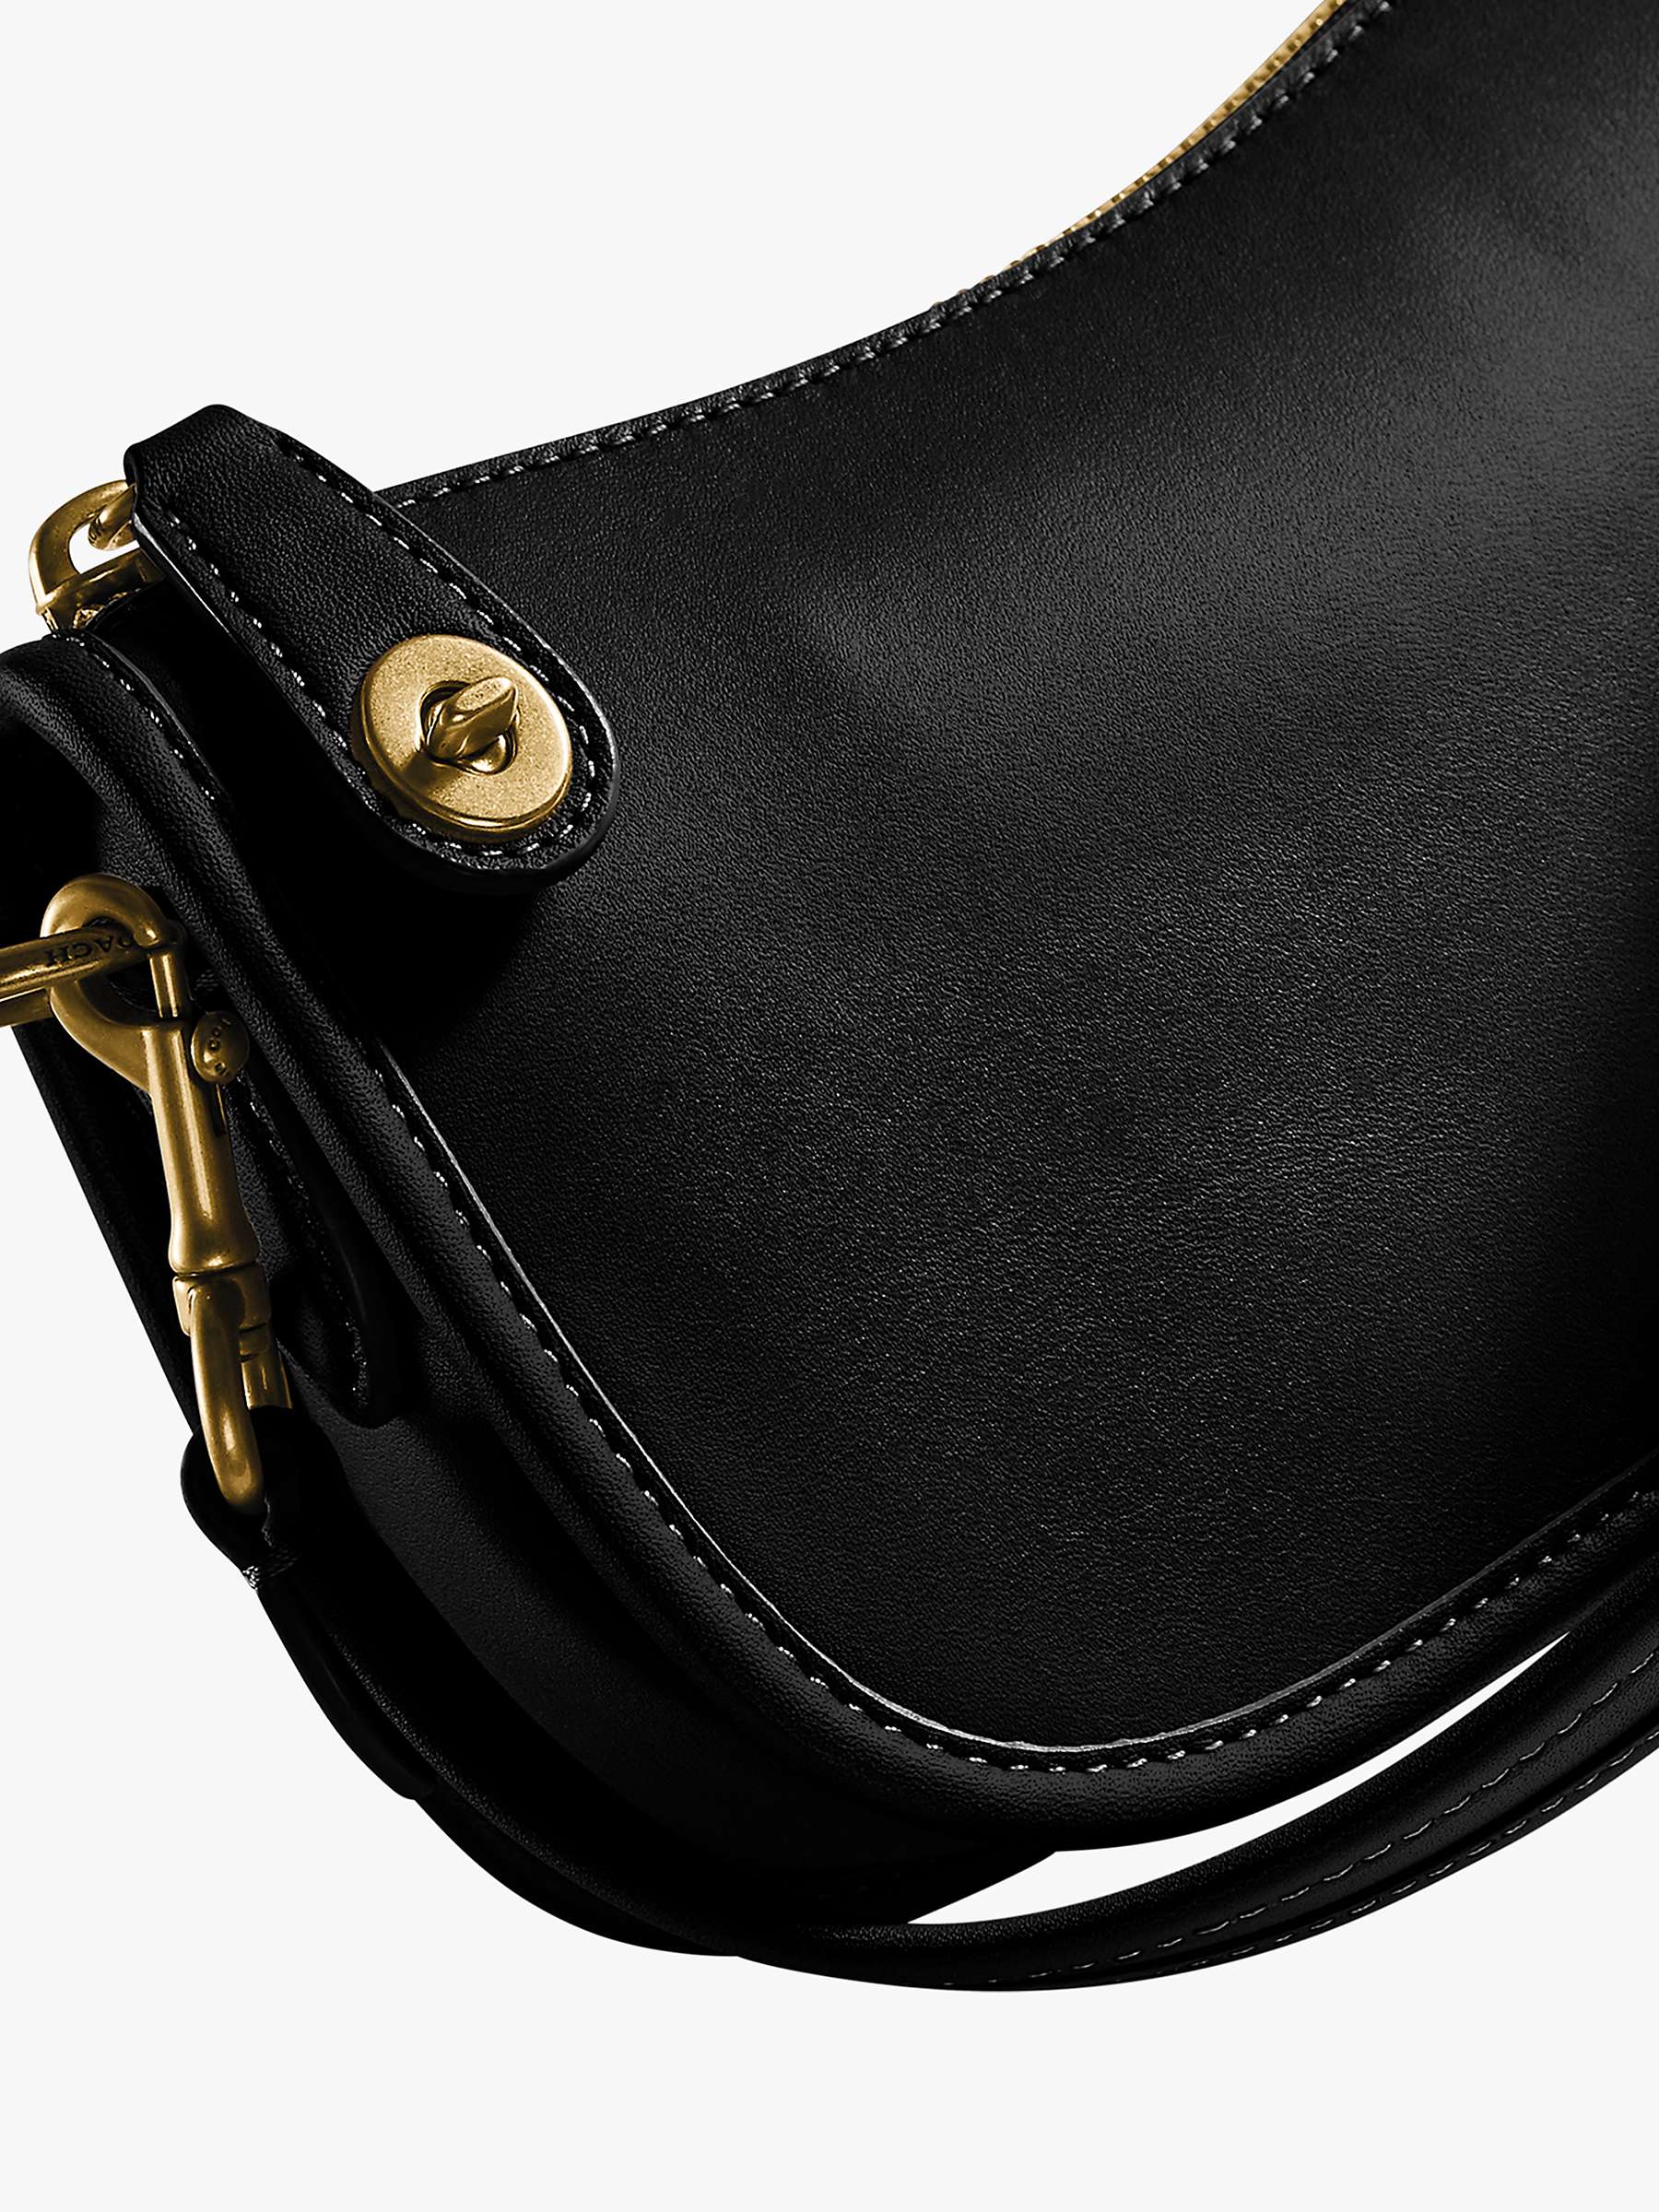 Buy Coach Swinger 20 Leather Shoulder Bag Online at johnlewis.com